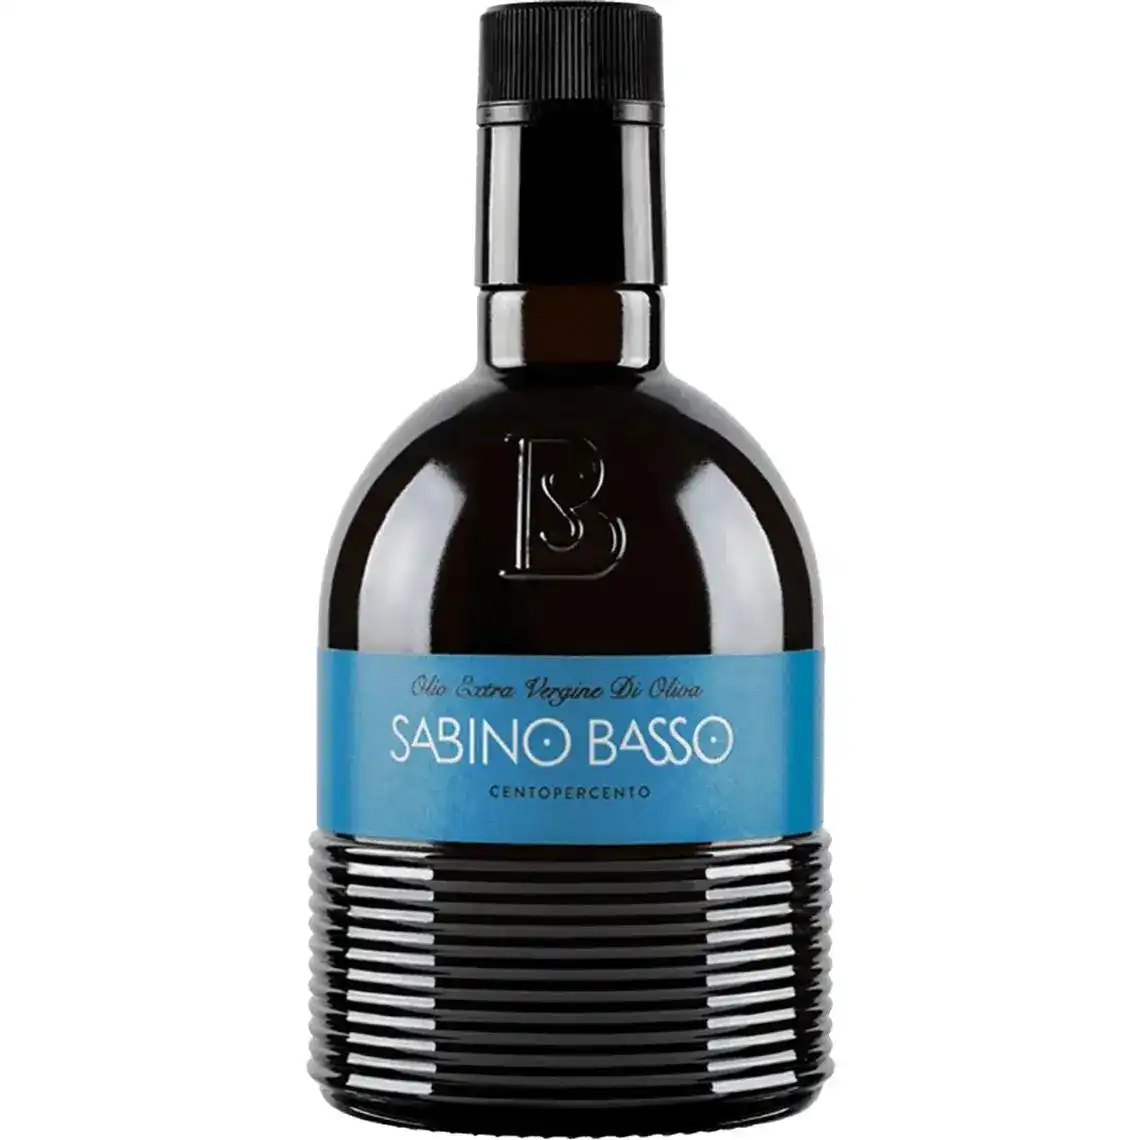 Оливкова олія Sabino Basso CENTOXTCENTO нерафінована 500 мл